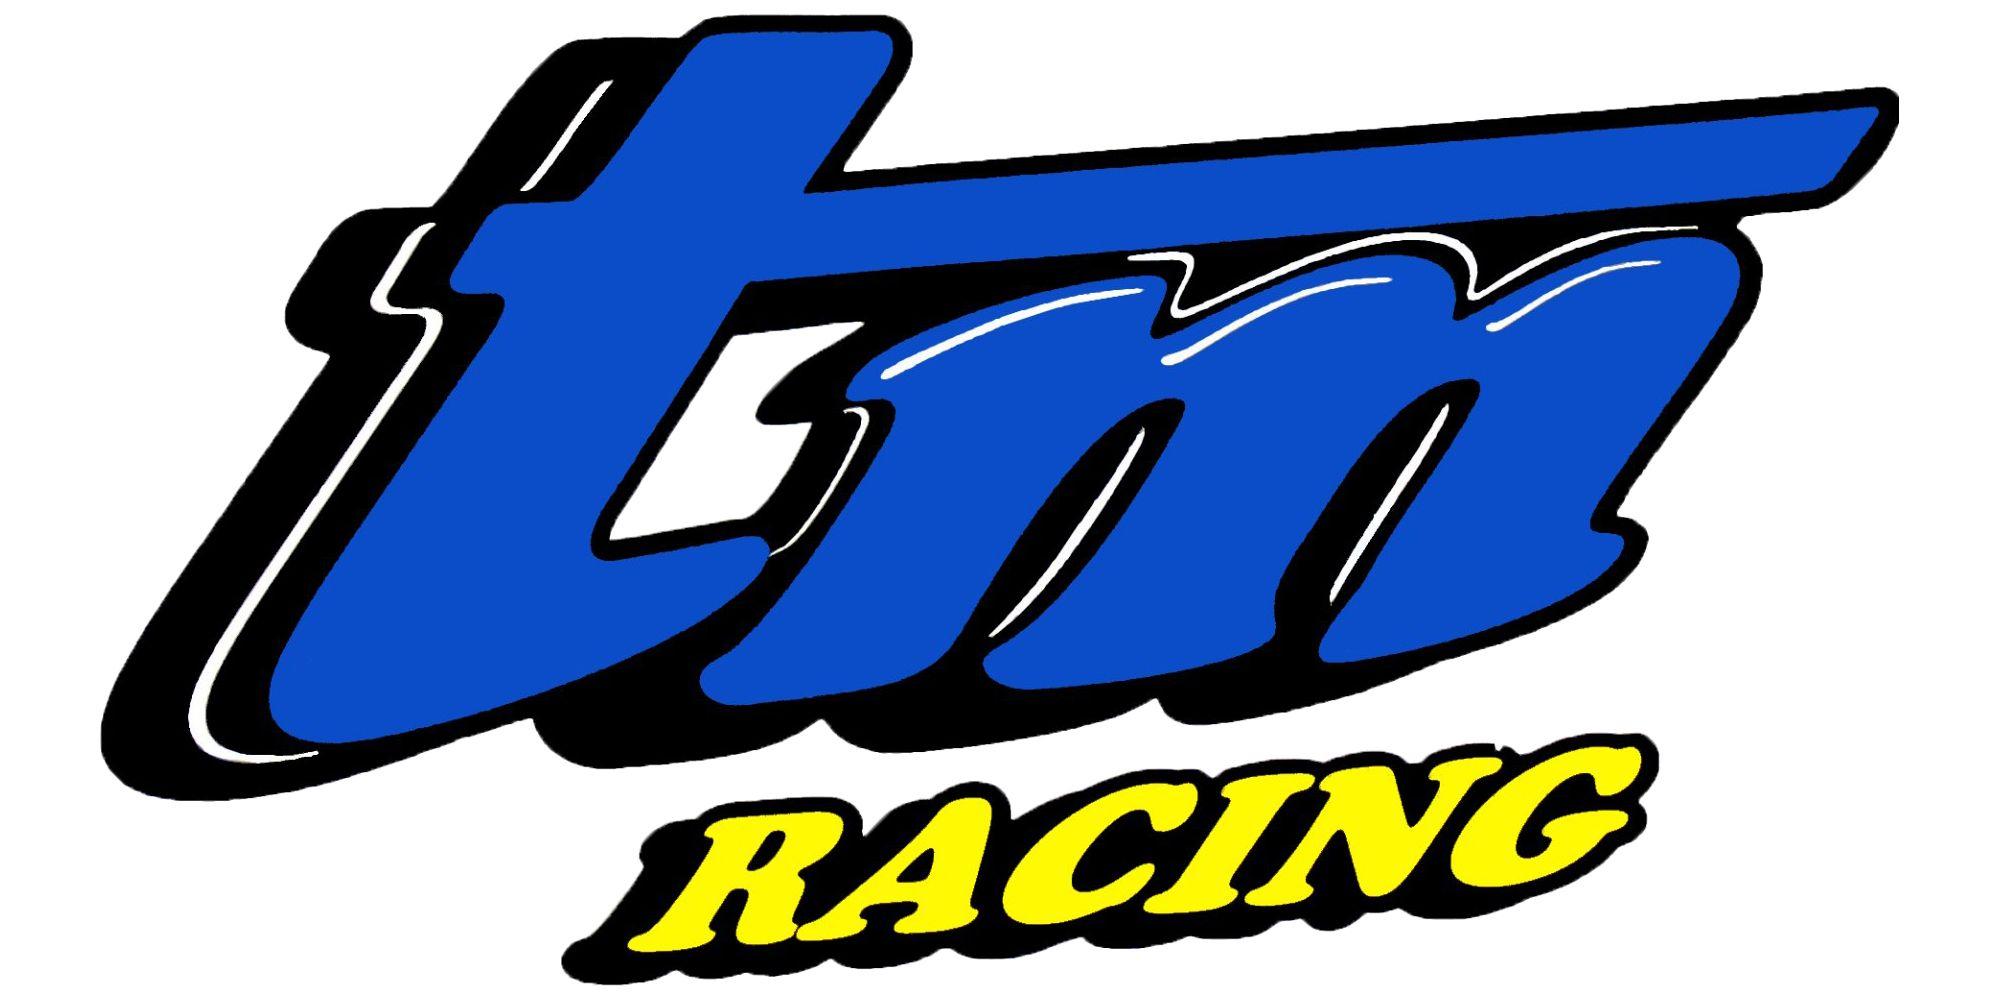 Blue TM Logo - Download logo's – Gravity TM Racing USA